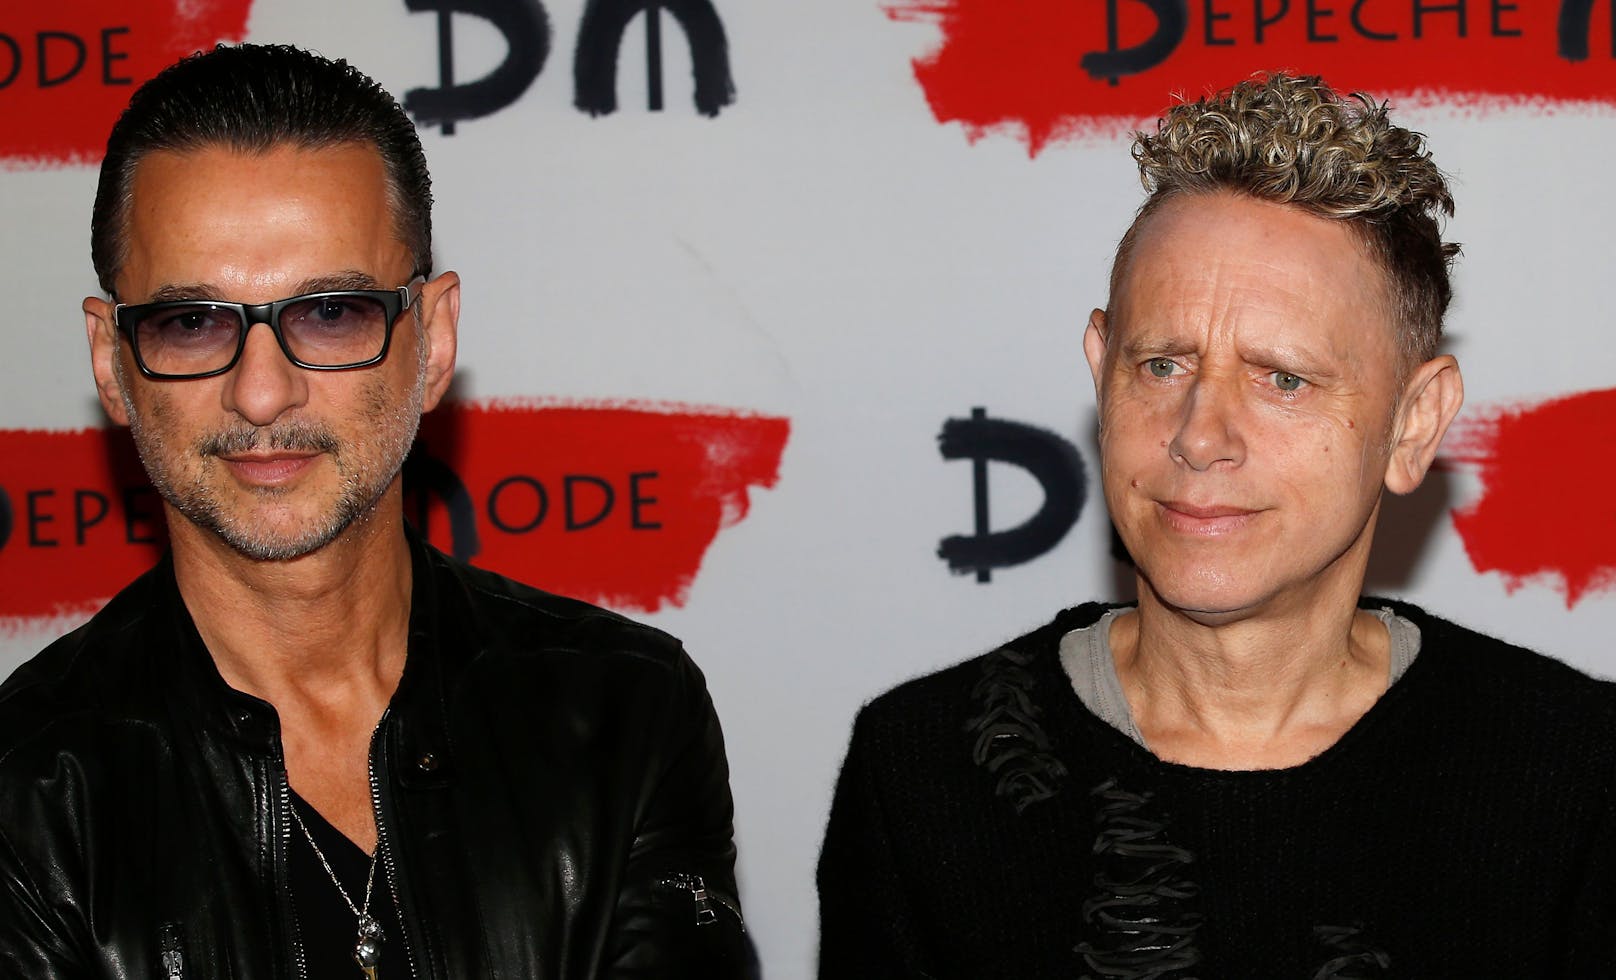 Nach dem Tod von Gründungsmitglied Andy Fletcher machen <strong>Depeche Mode</strong> nun als Duo weiter:&nbsp;<strong>Dave Gahan</strong>&nbsp;(links) und <strong>Martin Gore</strong>.